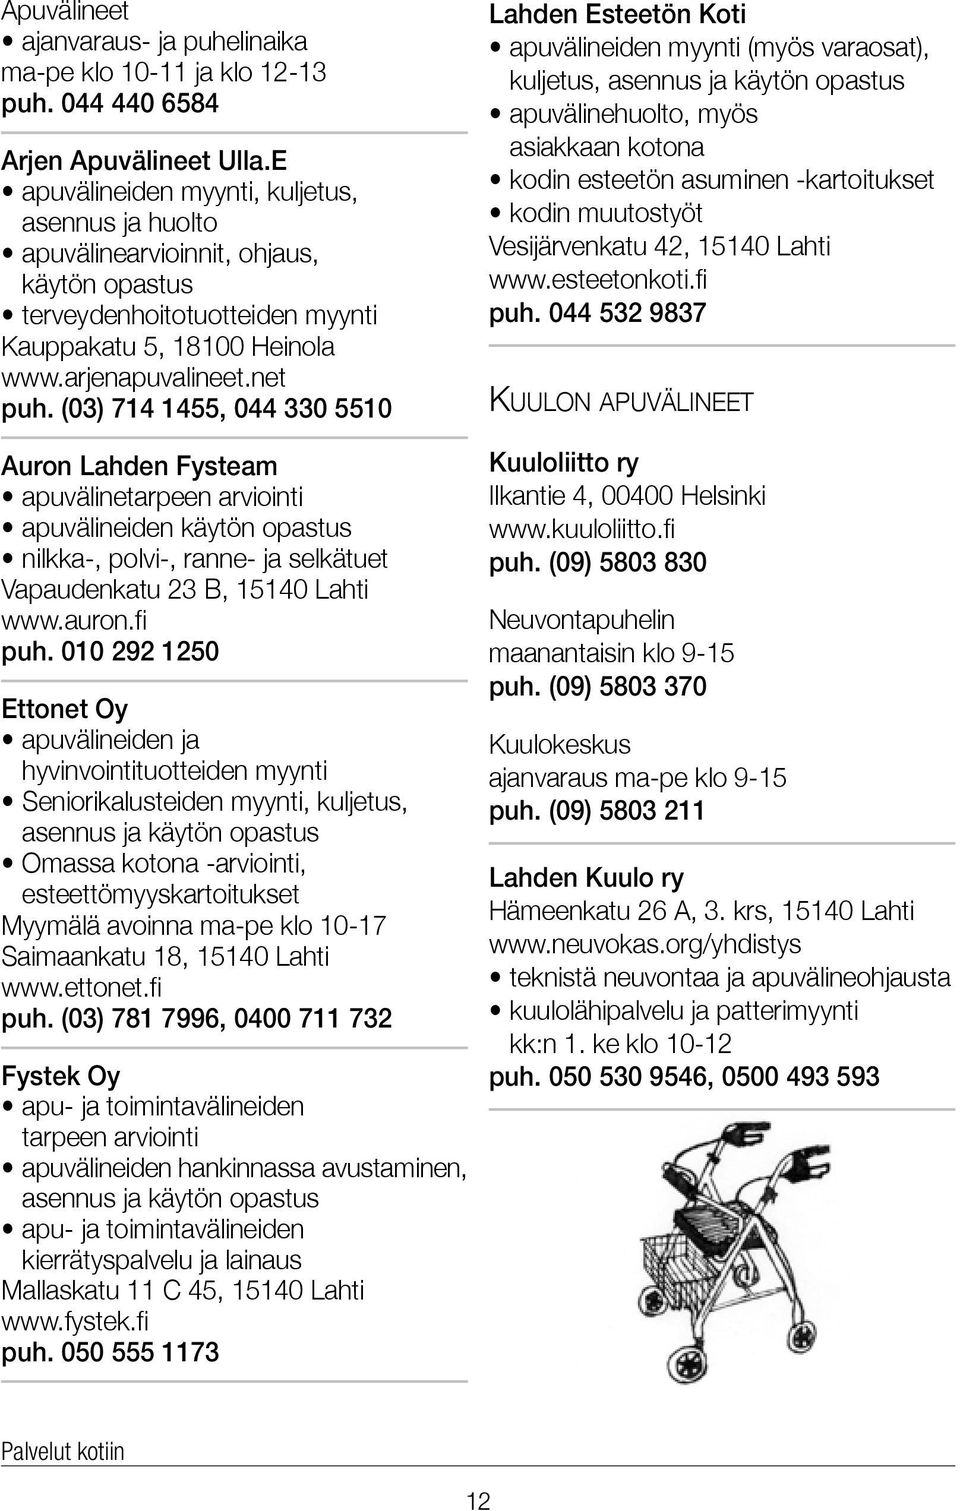 (03) 714 1455, 044 330 5510 Auron Lahden Fysteam apuvälinetarpeen arviointi apuvälineiden käytön opastus nilkka-, polvi-, ranne- ja selkätuet Vapaudenkatu 23 B, 15140 Lahti www.auron.fi puh.